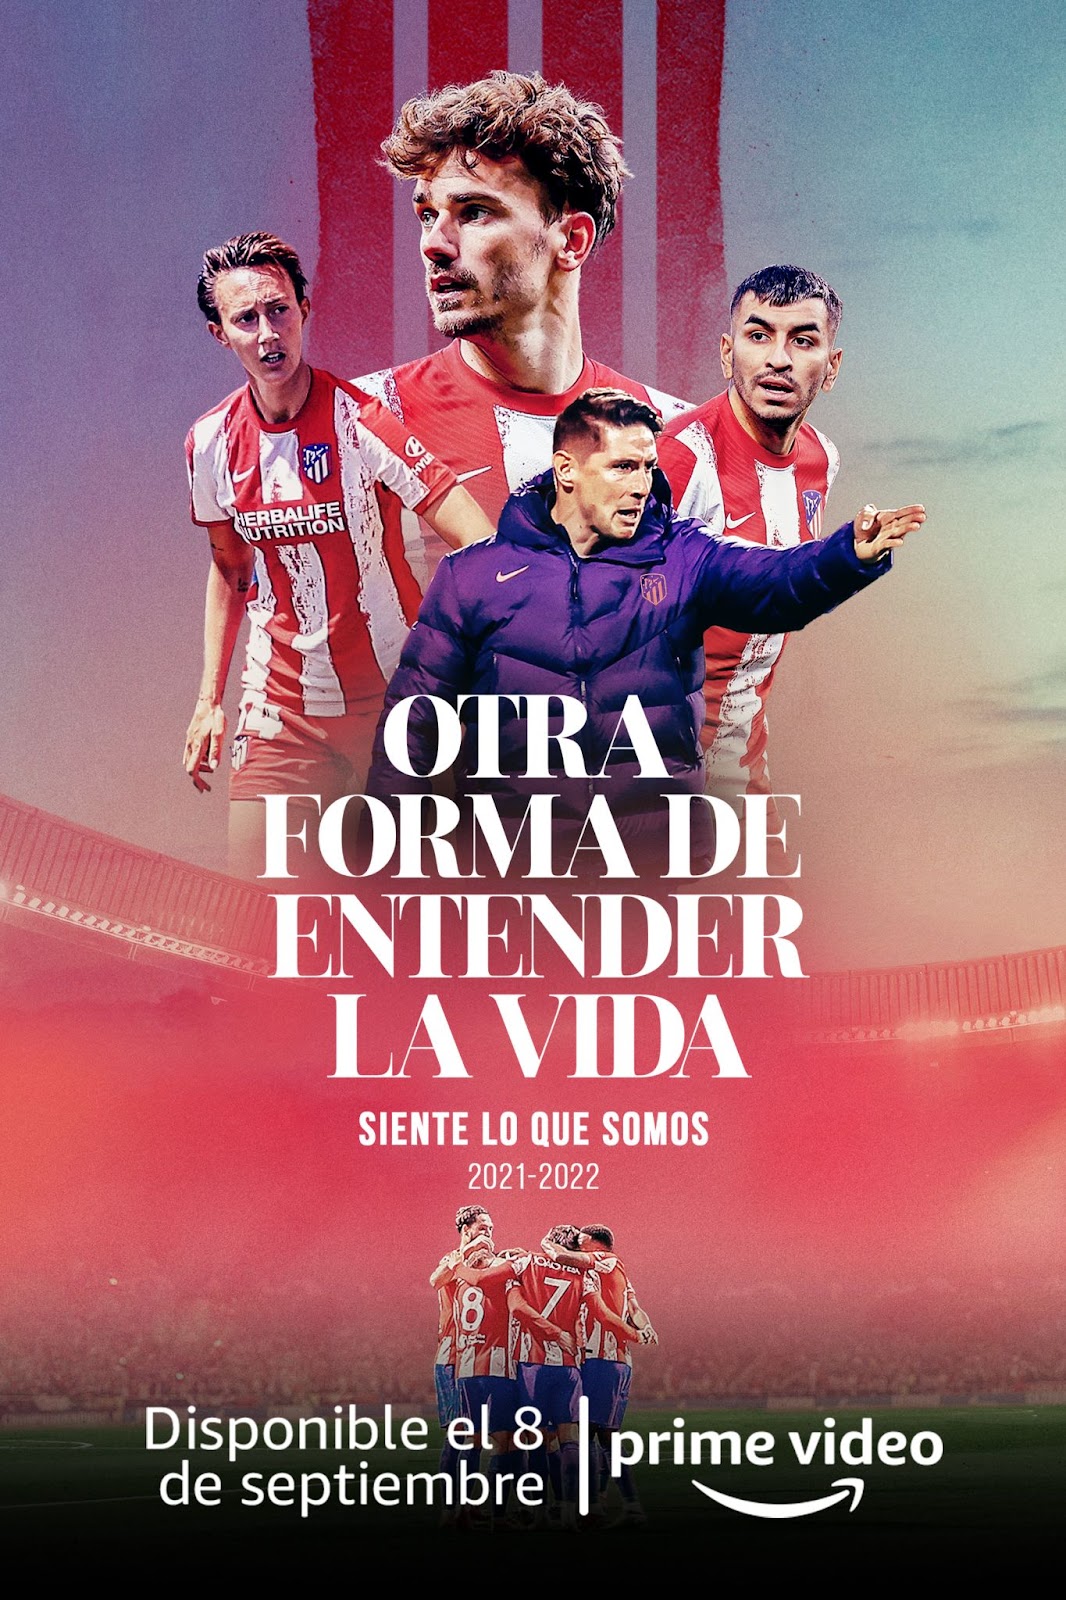 Prime Video estrenará en exclusiva la docuserie sobre el Atlético de Madrid